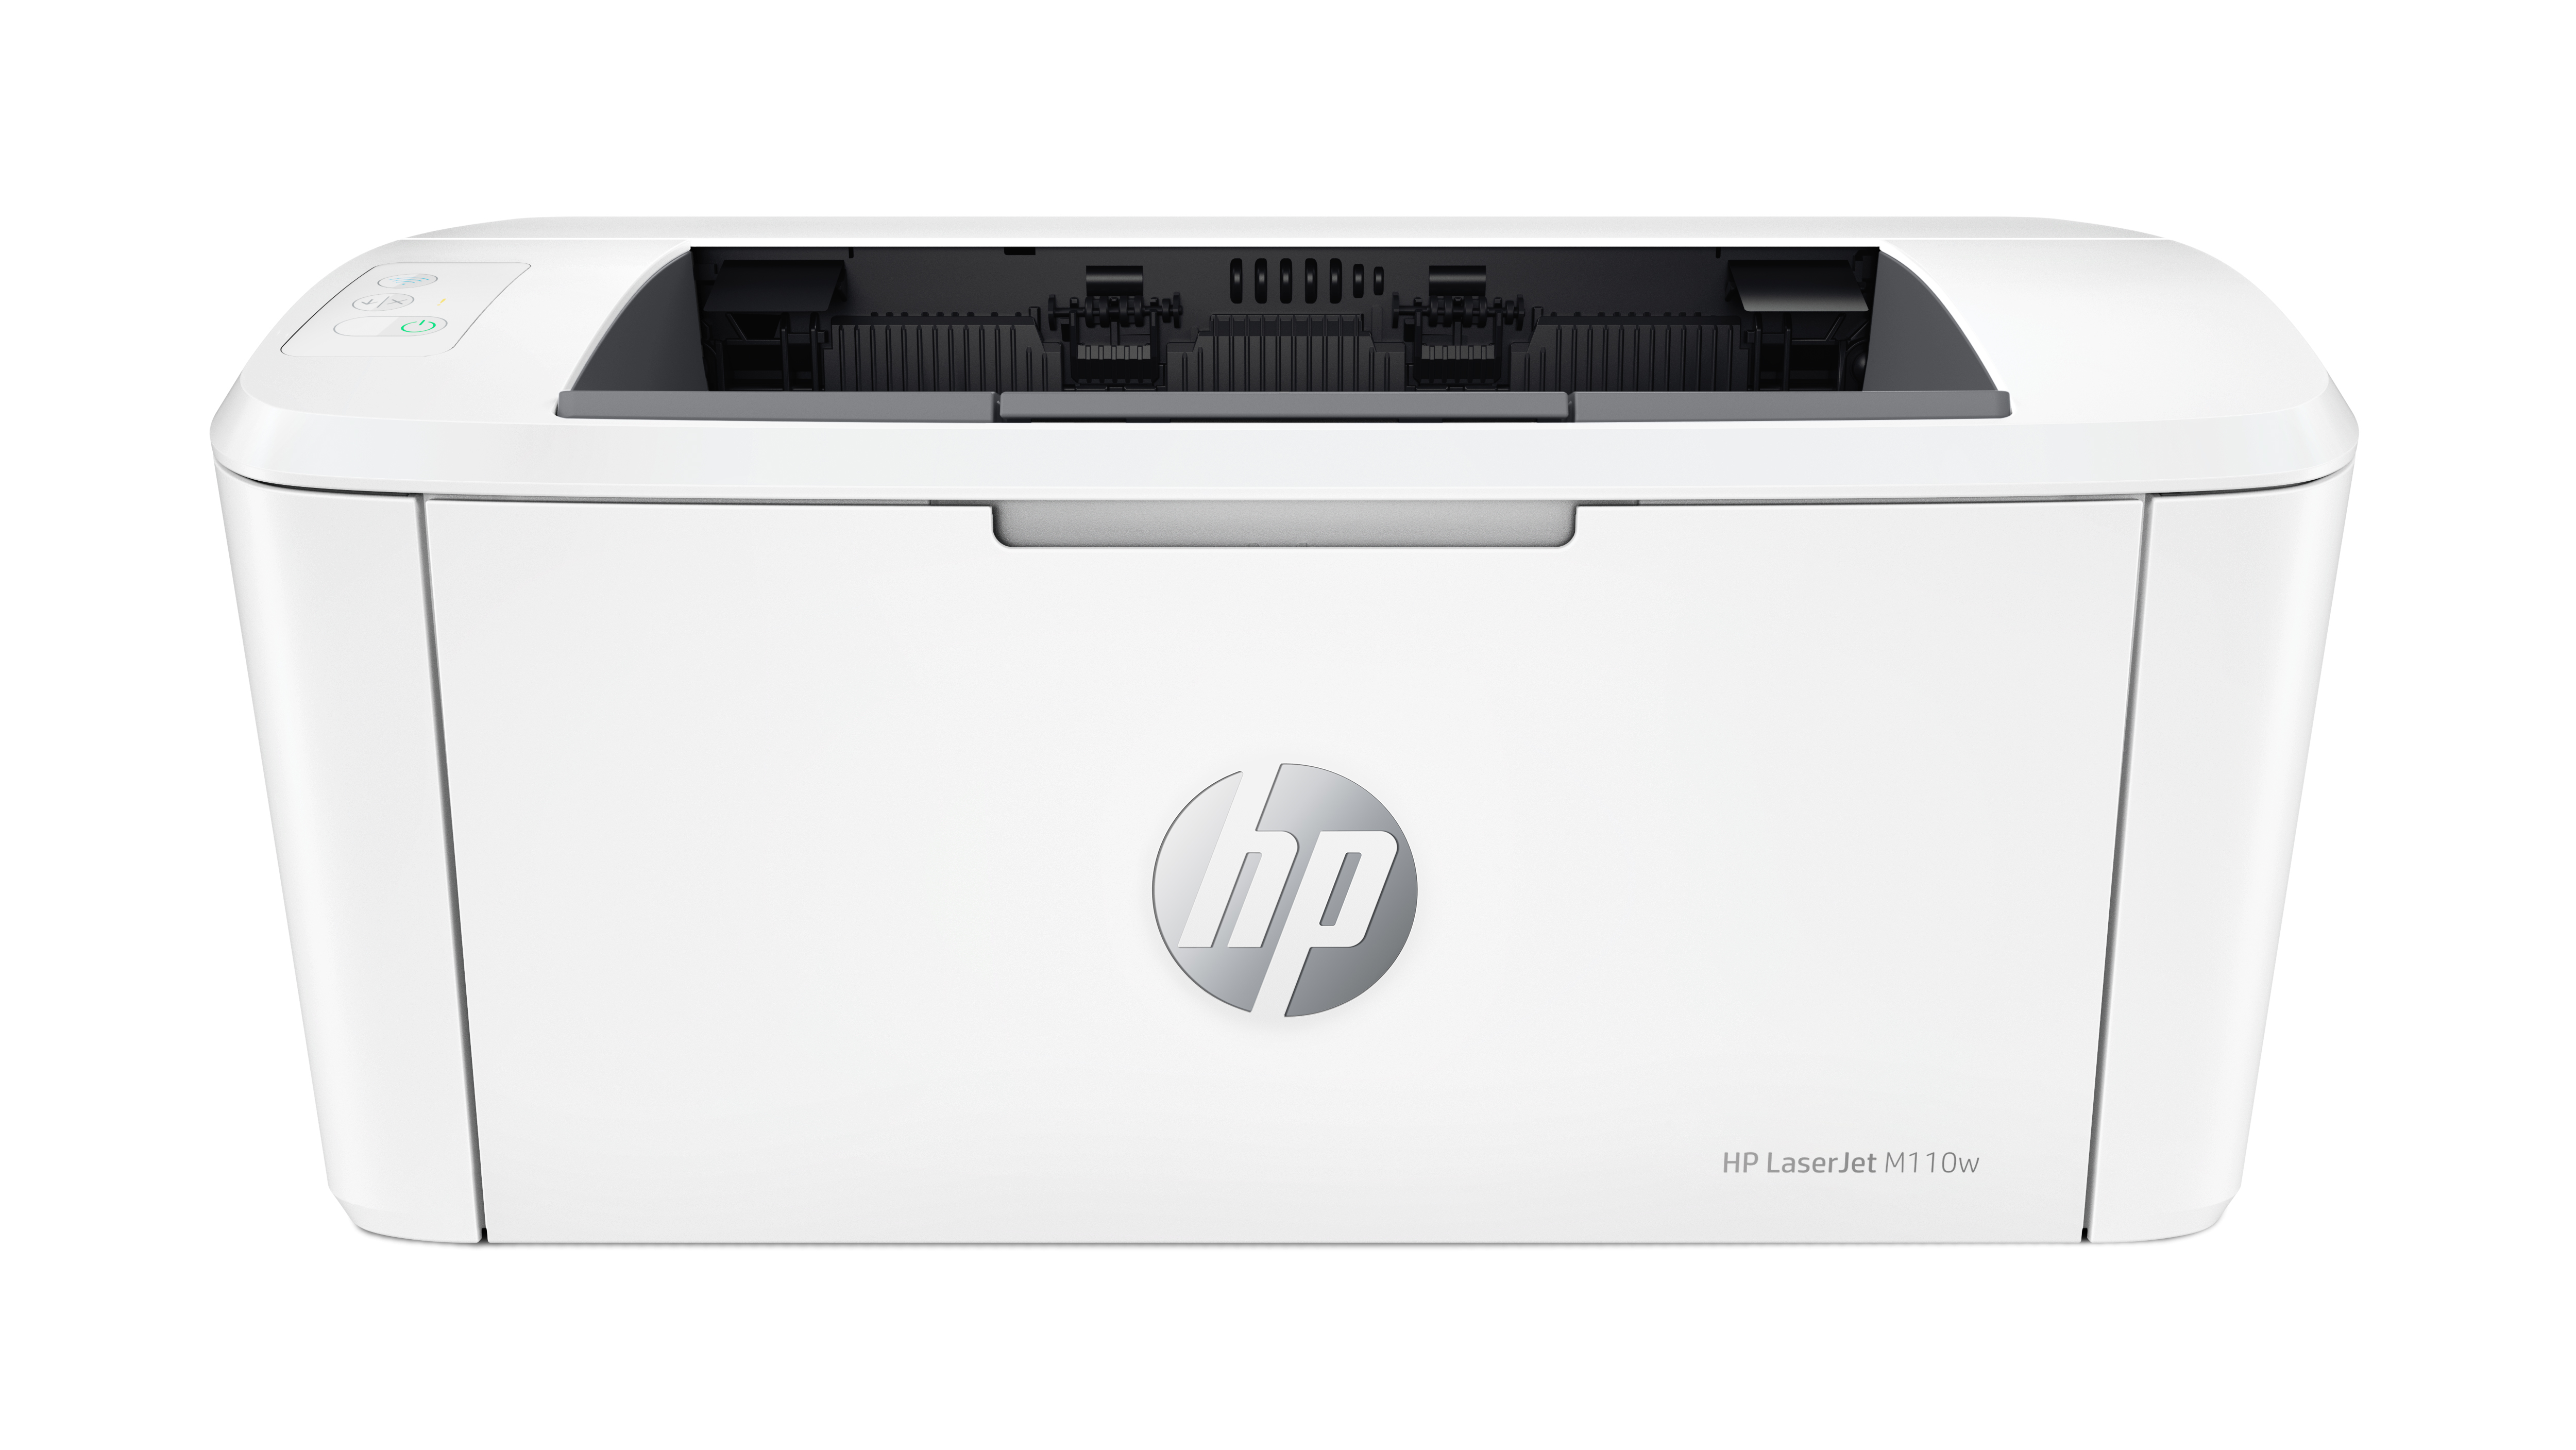 Image of HP LaserJet Stampante M110w, Bianco e nero, Stampante per Piccoli uffici, Stampa, dimensioni compatte